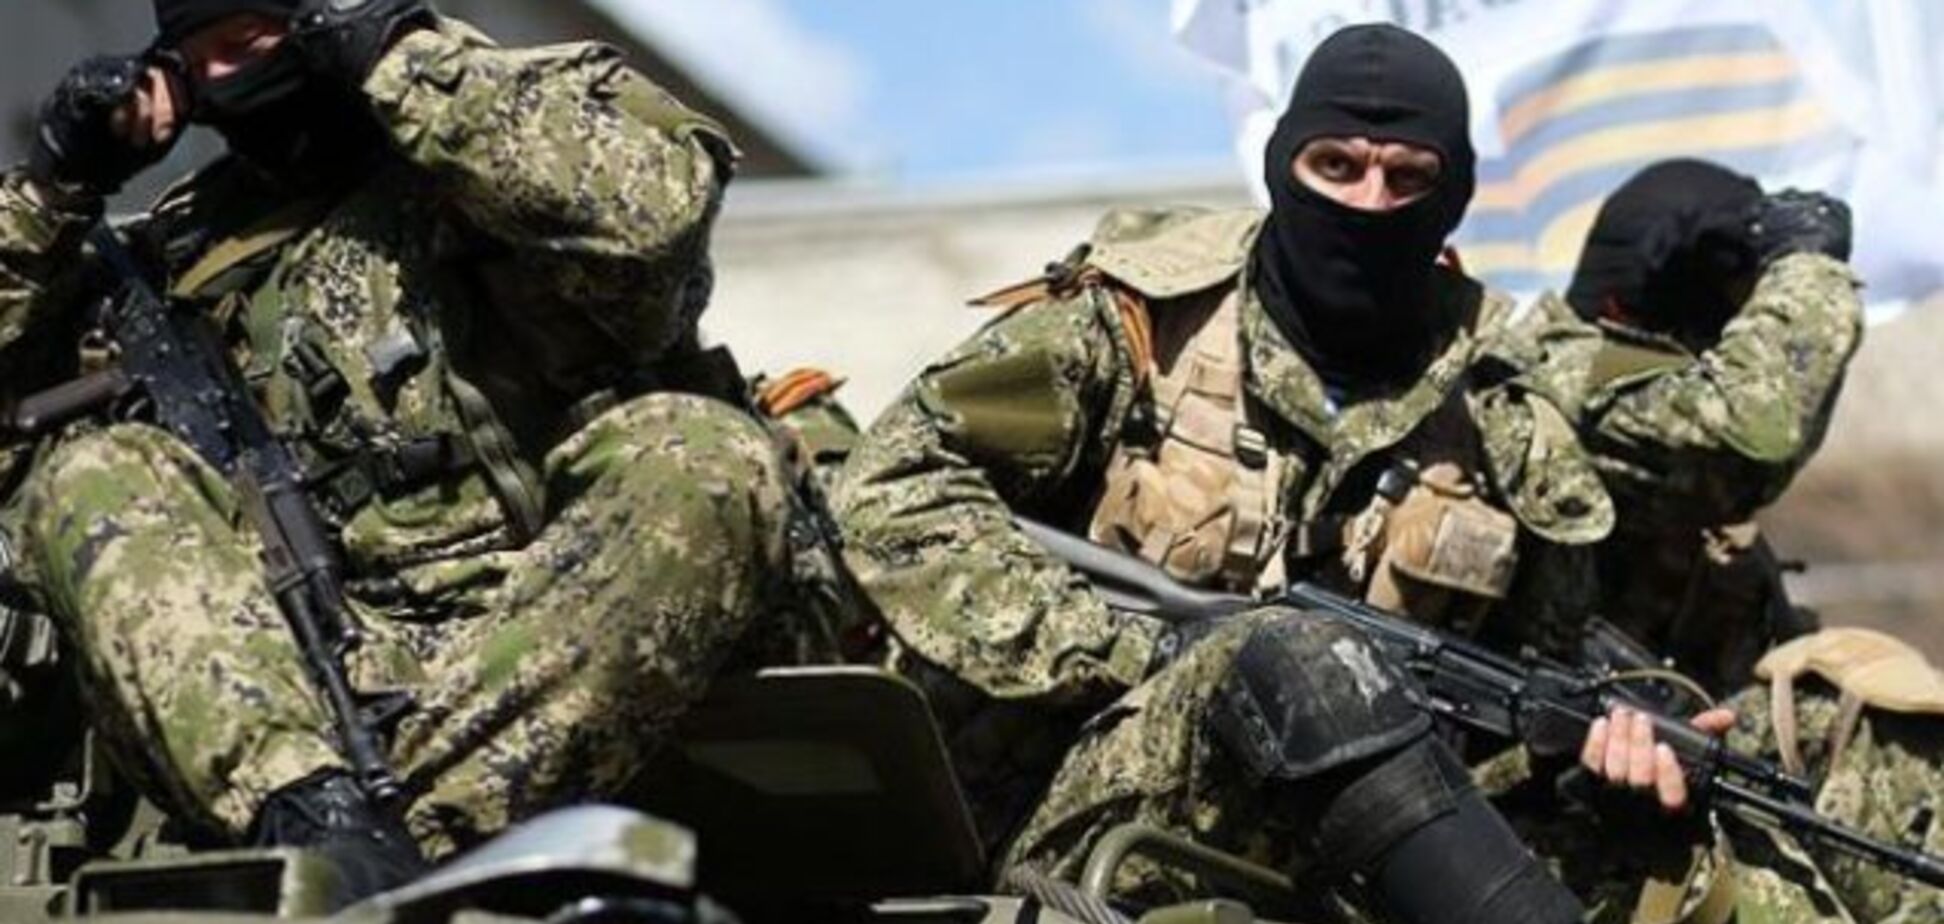 Убитые и раненые: офицер сообщил о масштабных потерях России на Донбассе